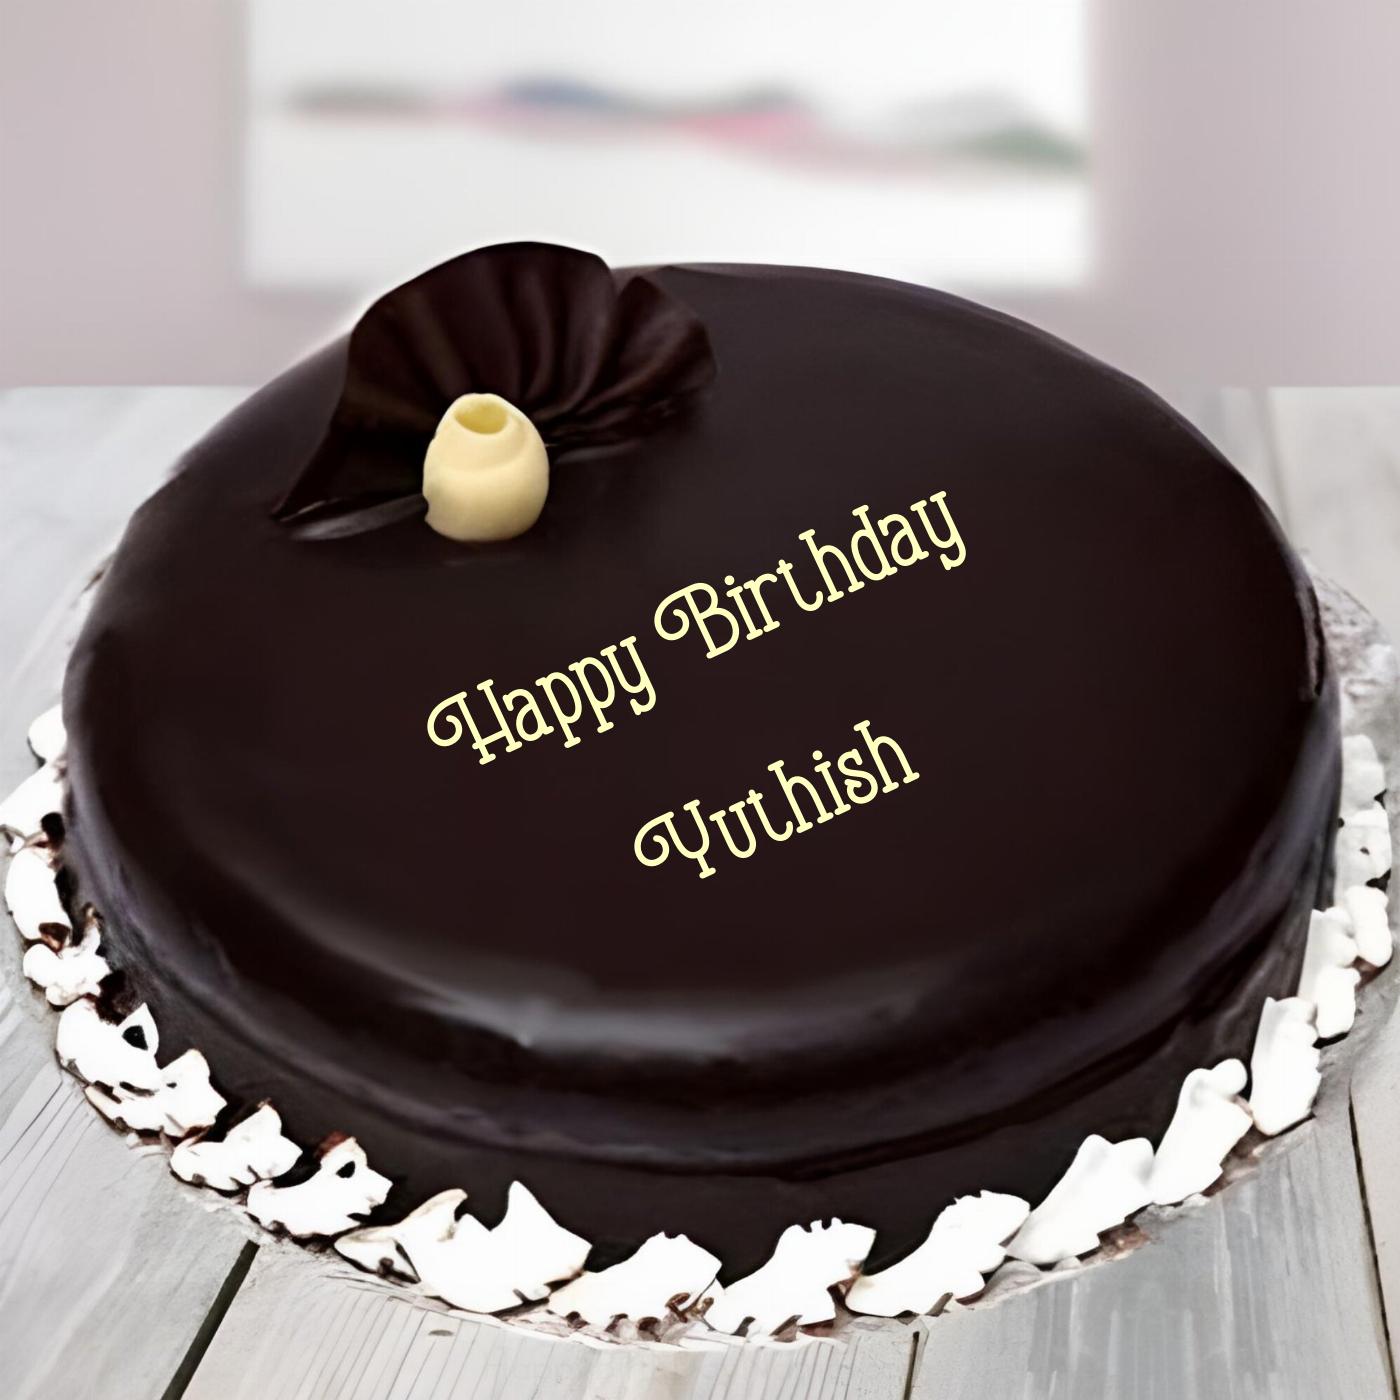 Happy Birthday Yuthish Beautiful Chocolate Cake